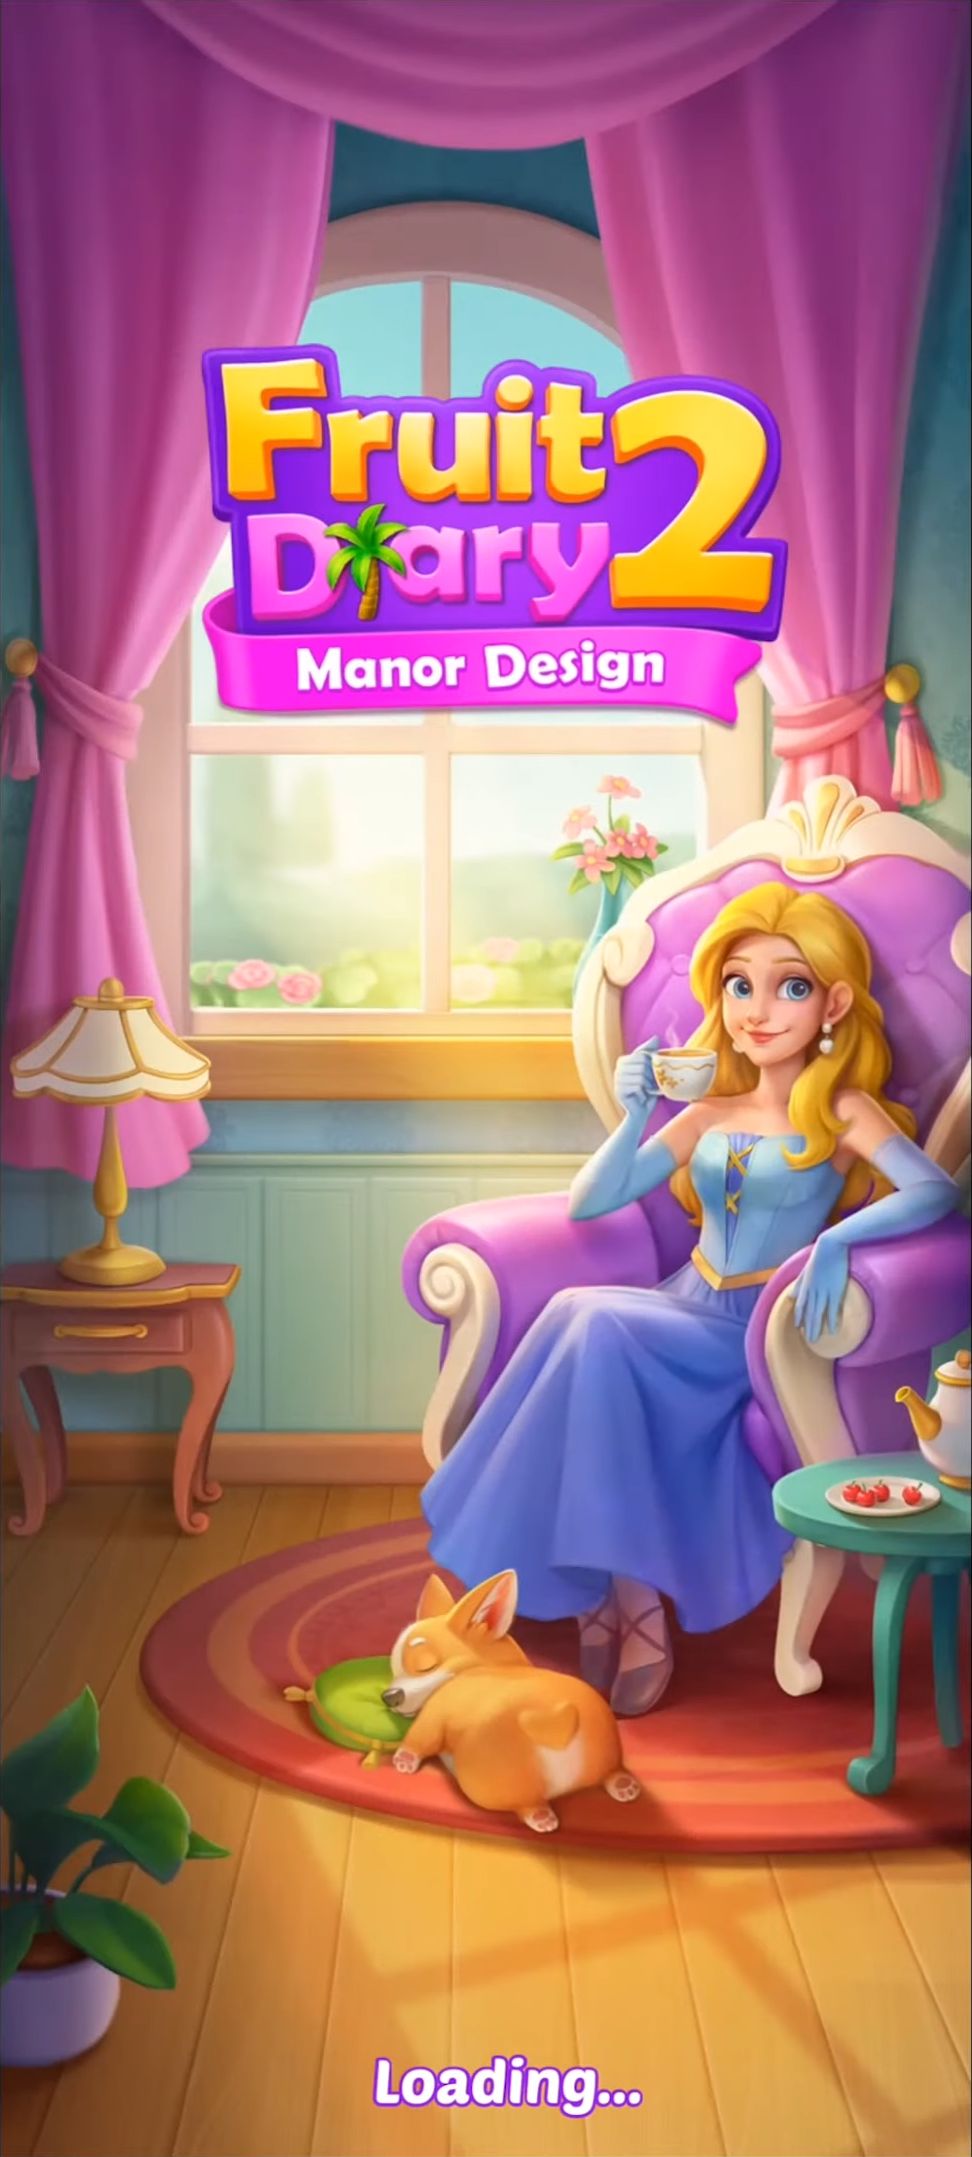 Descargar Fruit Diary 2: Manor Design gratis para Android.